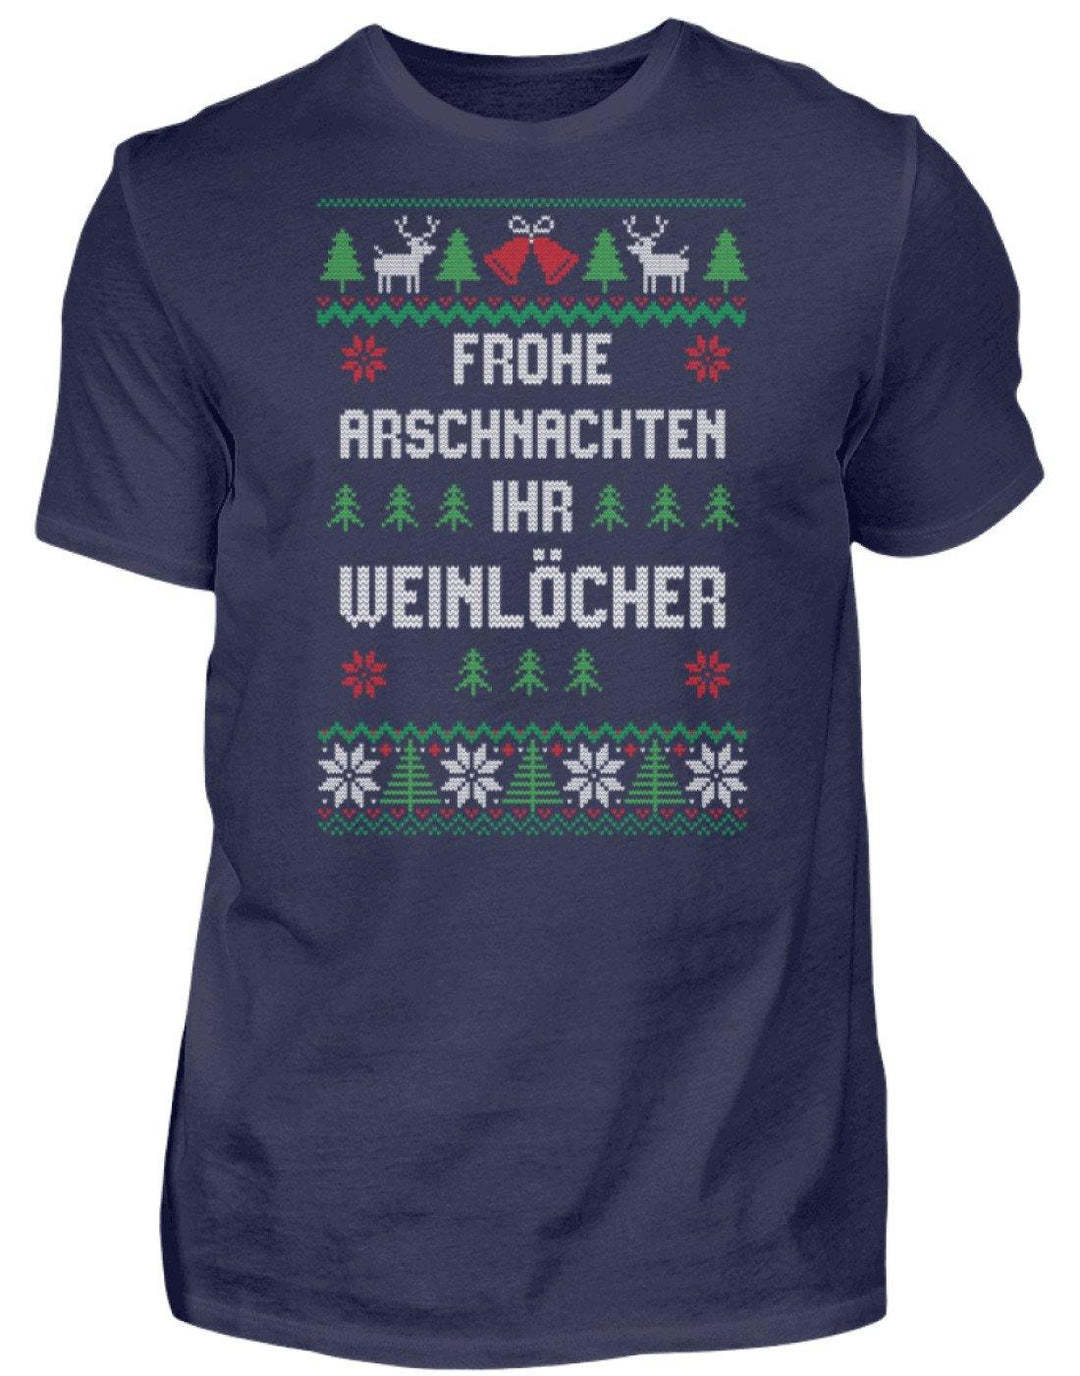 Frohe Arschnachten - Words on Shirts  - Herren Shirt - Words on Shirts Sag es mit dem Mittelfinger Shirts Hoodies Sweatshirt Taschen Gymsack Spruch Sprüche Statement